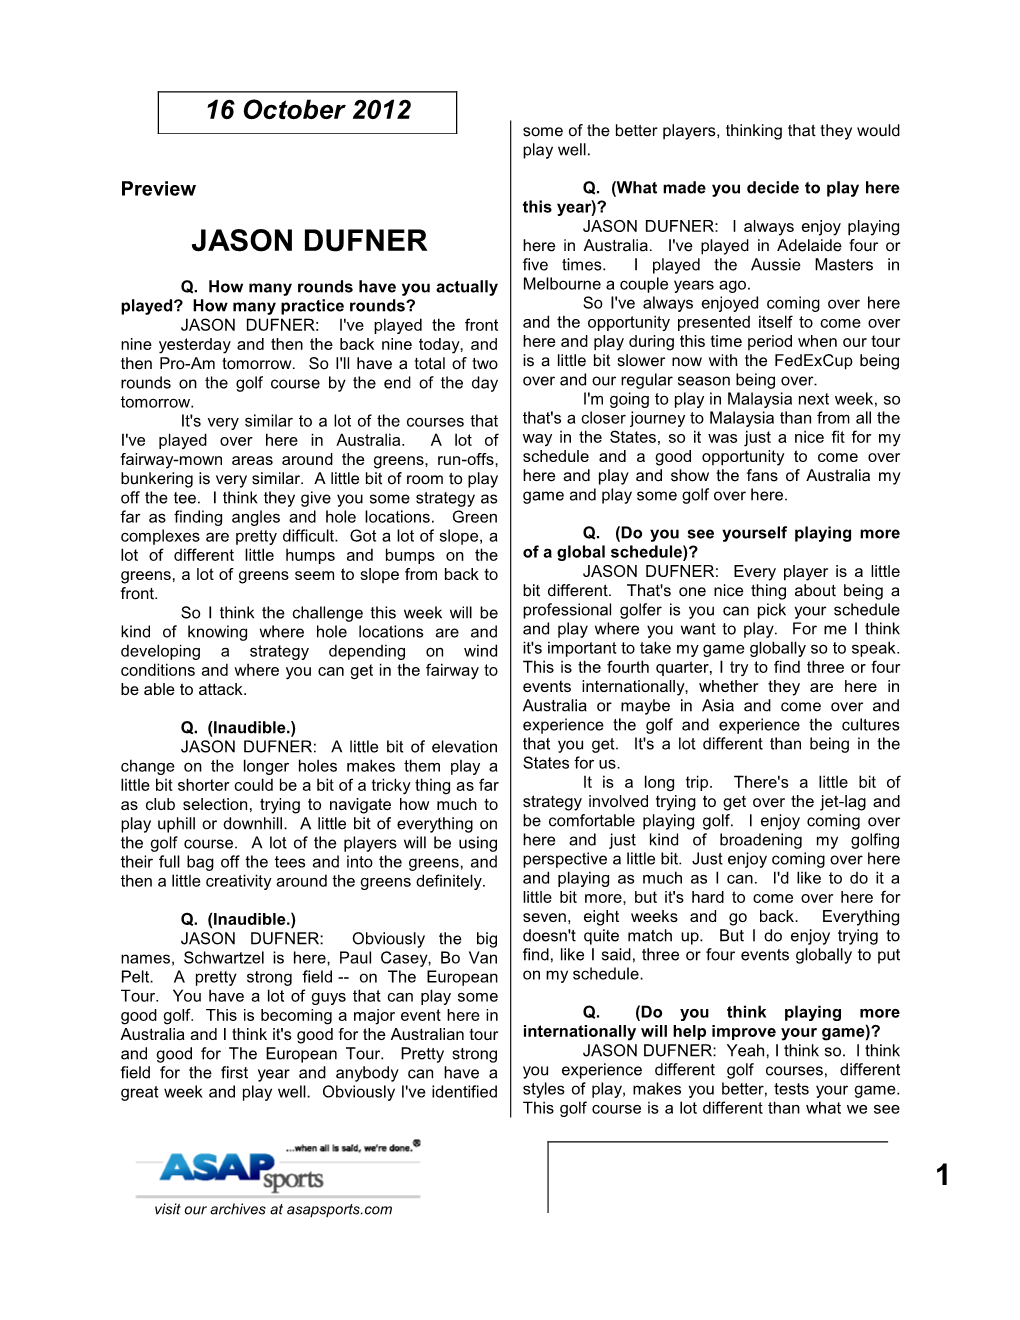 1 Jason Dufner